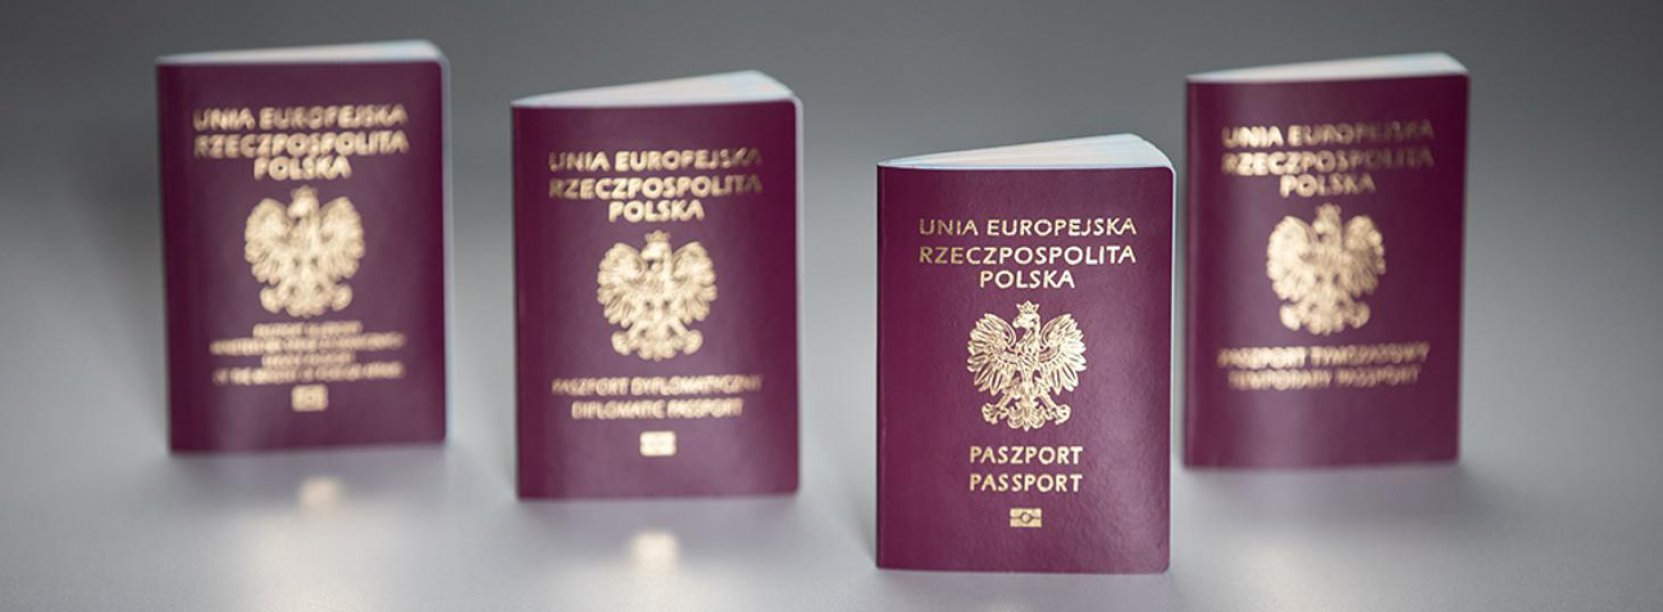 Cztery polskie paszporty, widok okładki, szare tło